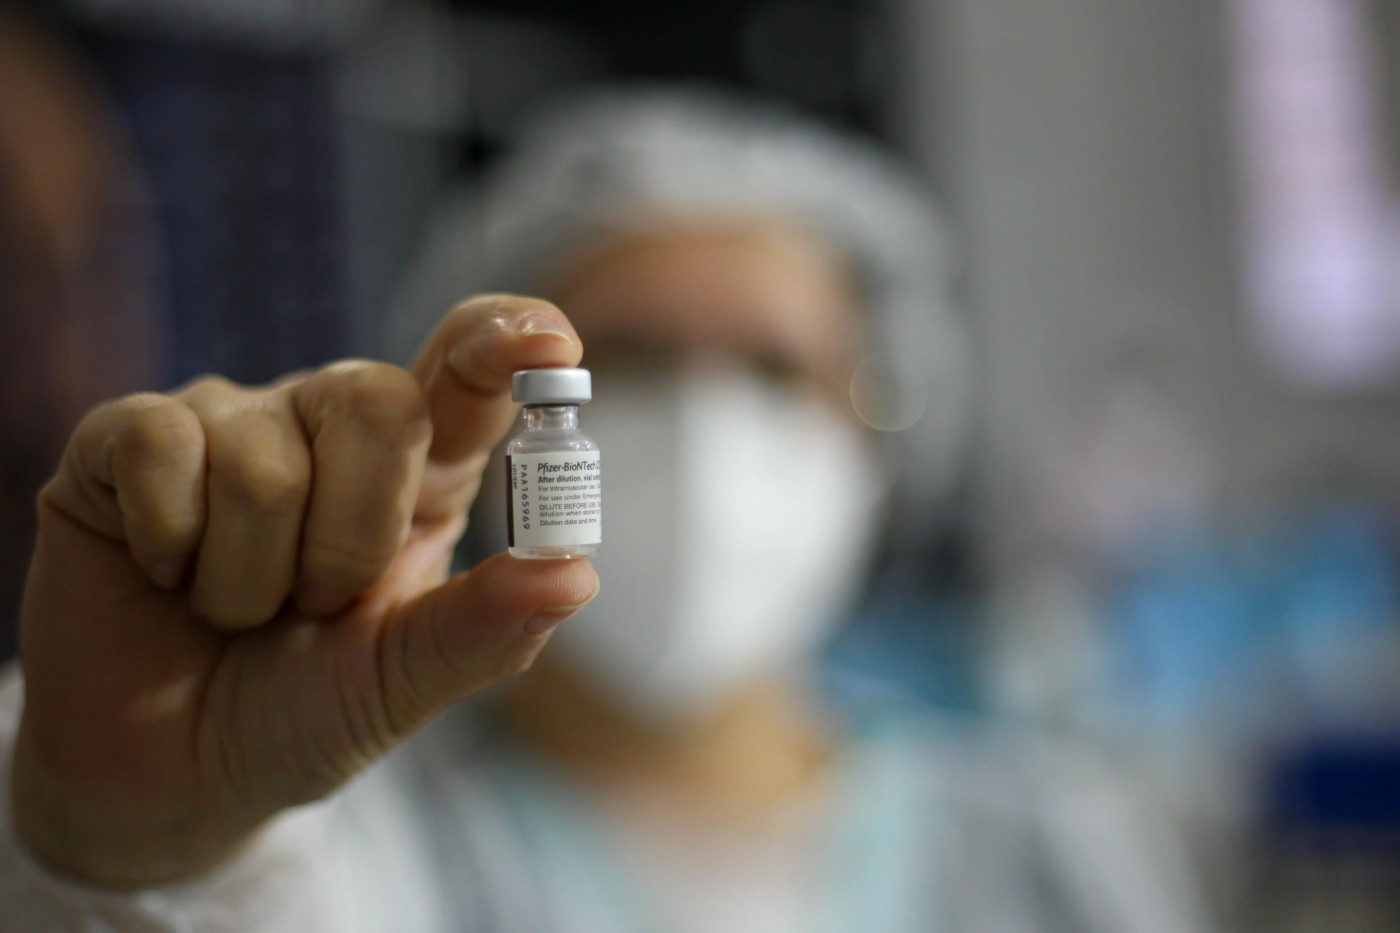 Profissional da saúde mostra frasco da vacina da Pfizer contra a Covid-19